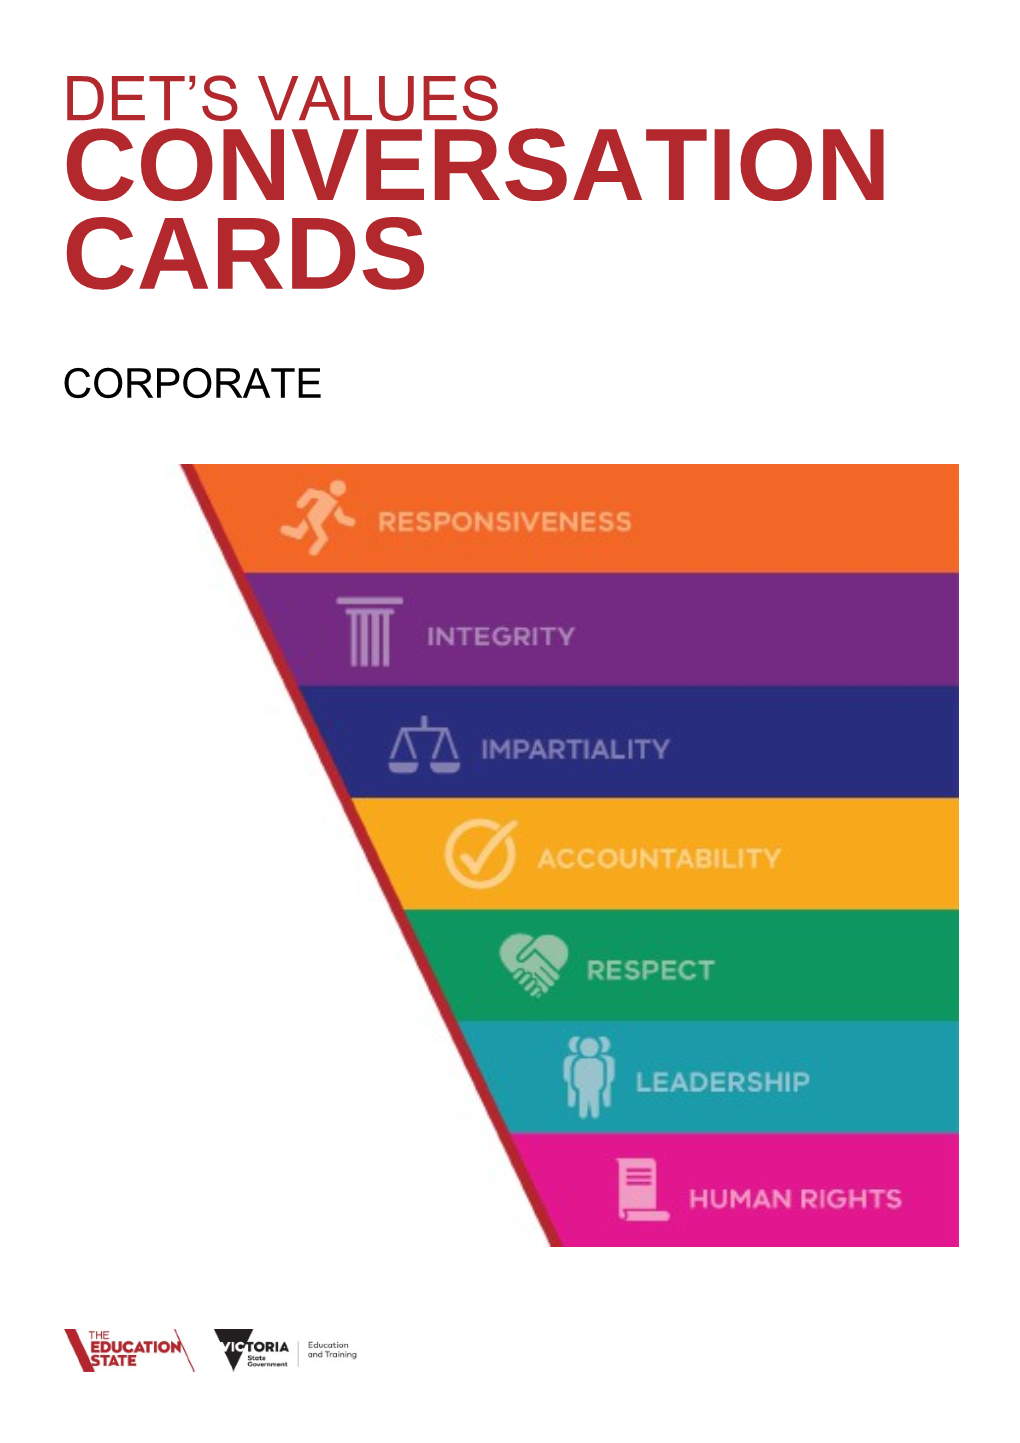 DET's Values Conversation Cards - Corporate